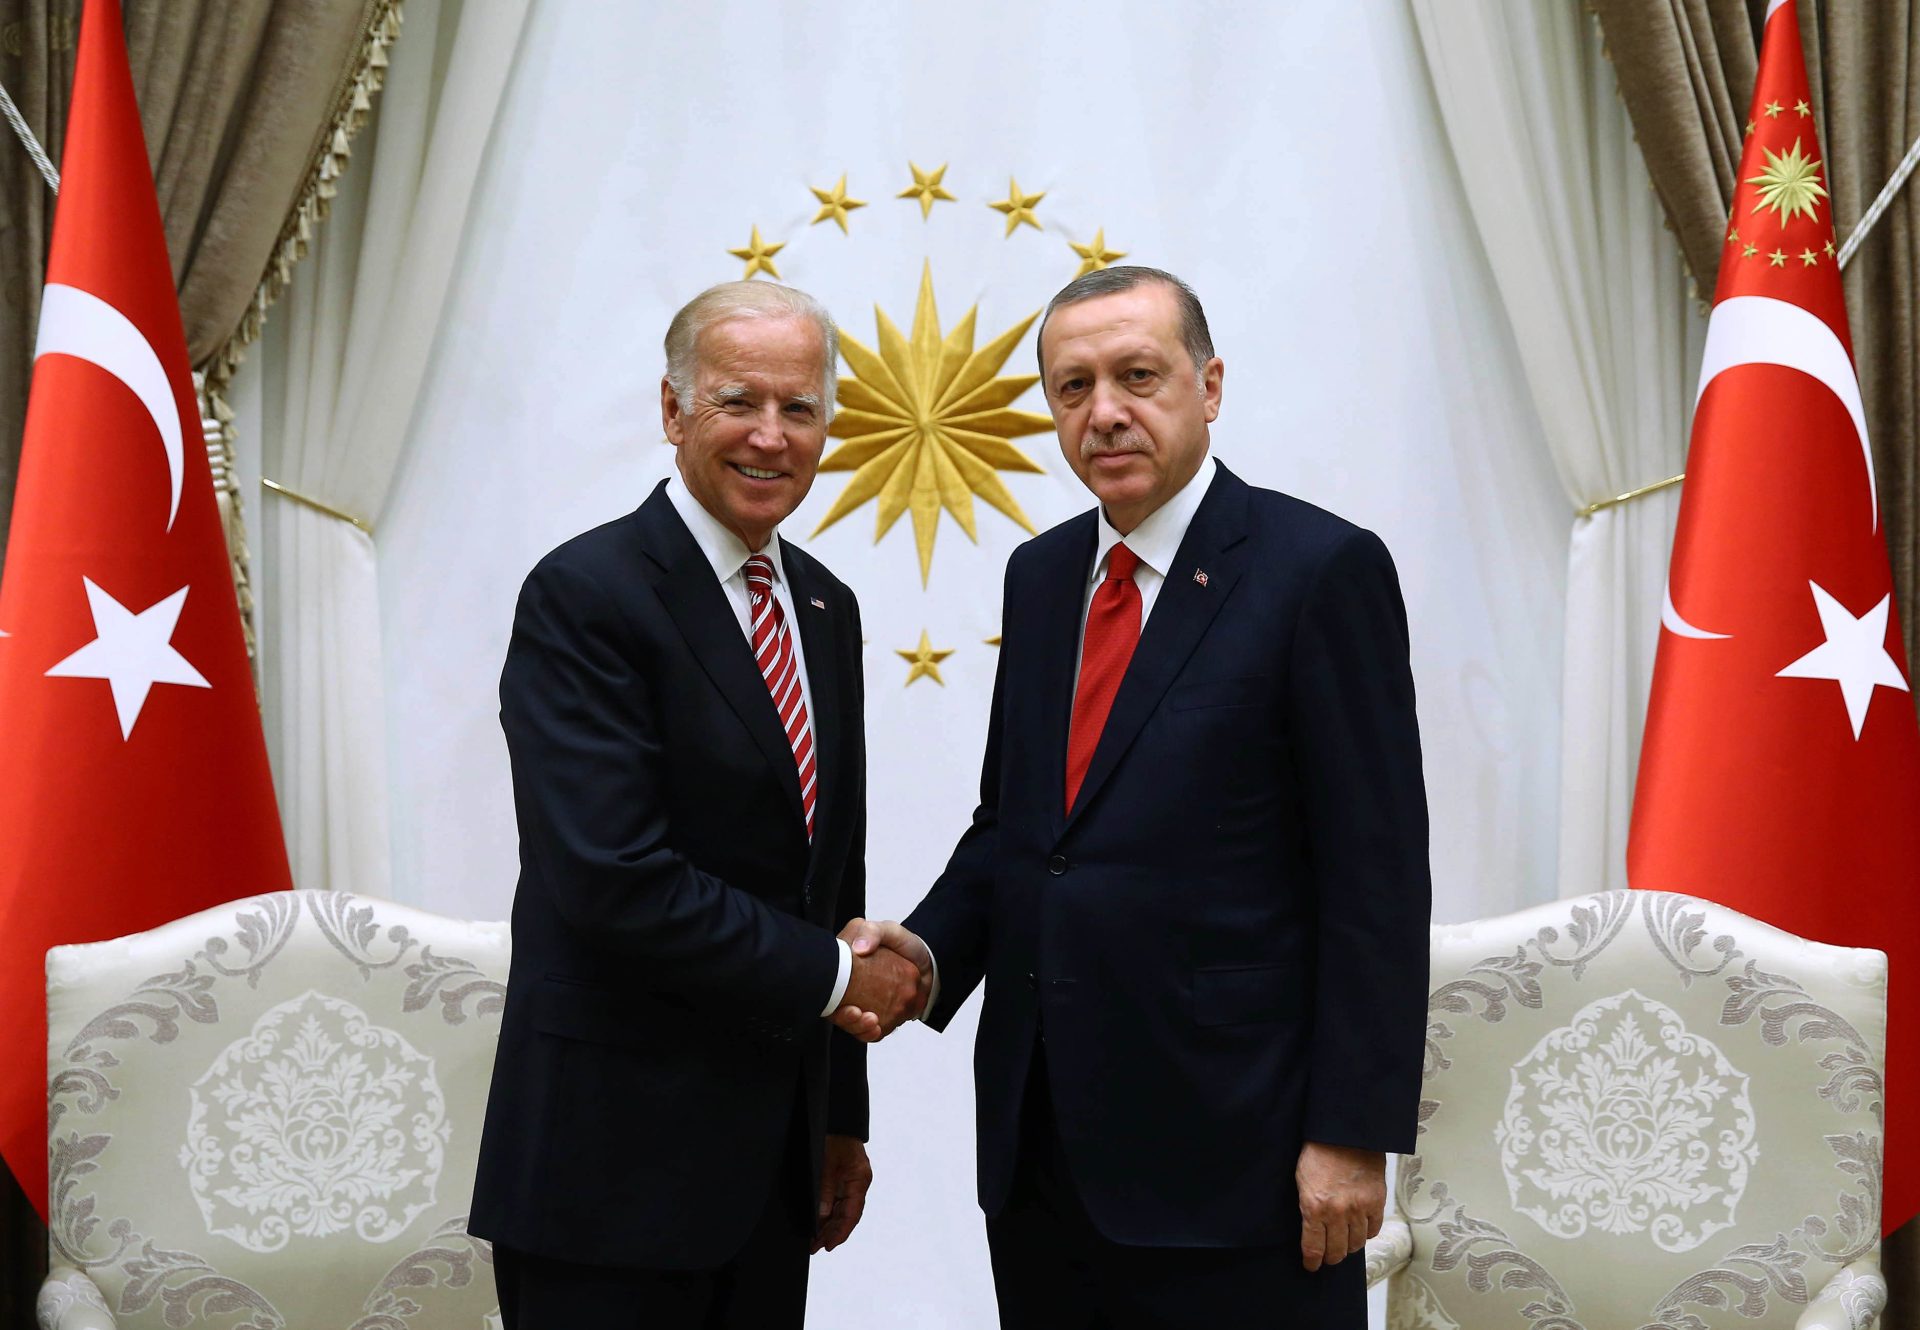 La visite d'Erdogan à Washington impactée par la situation turque?